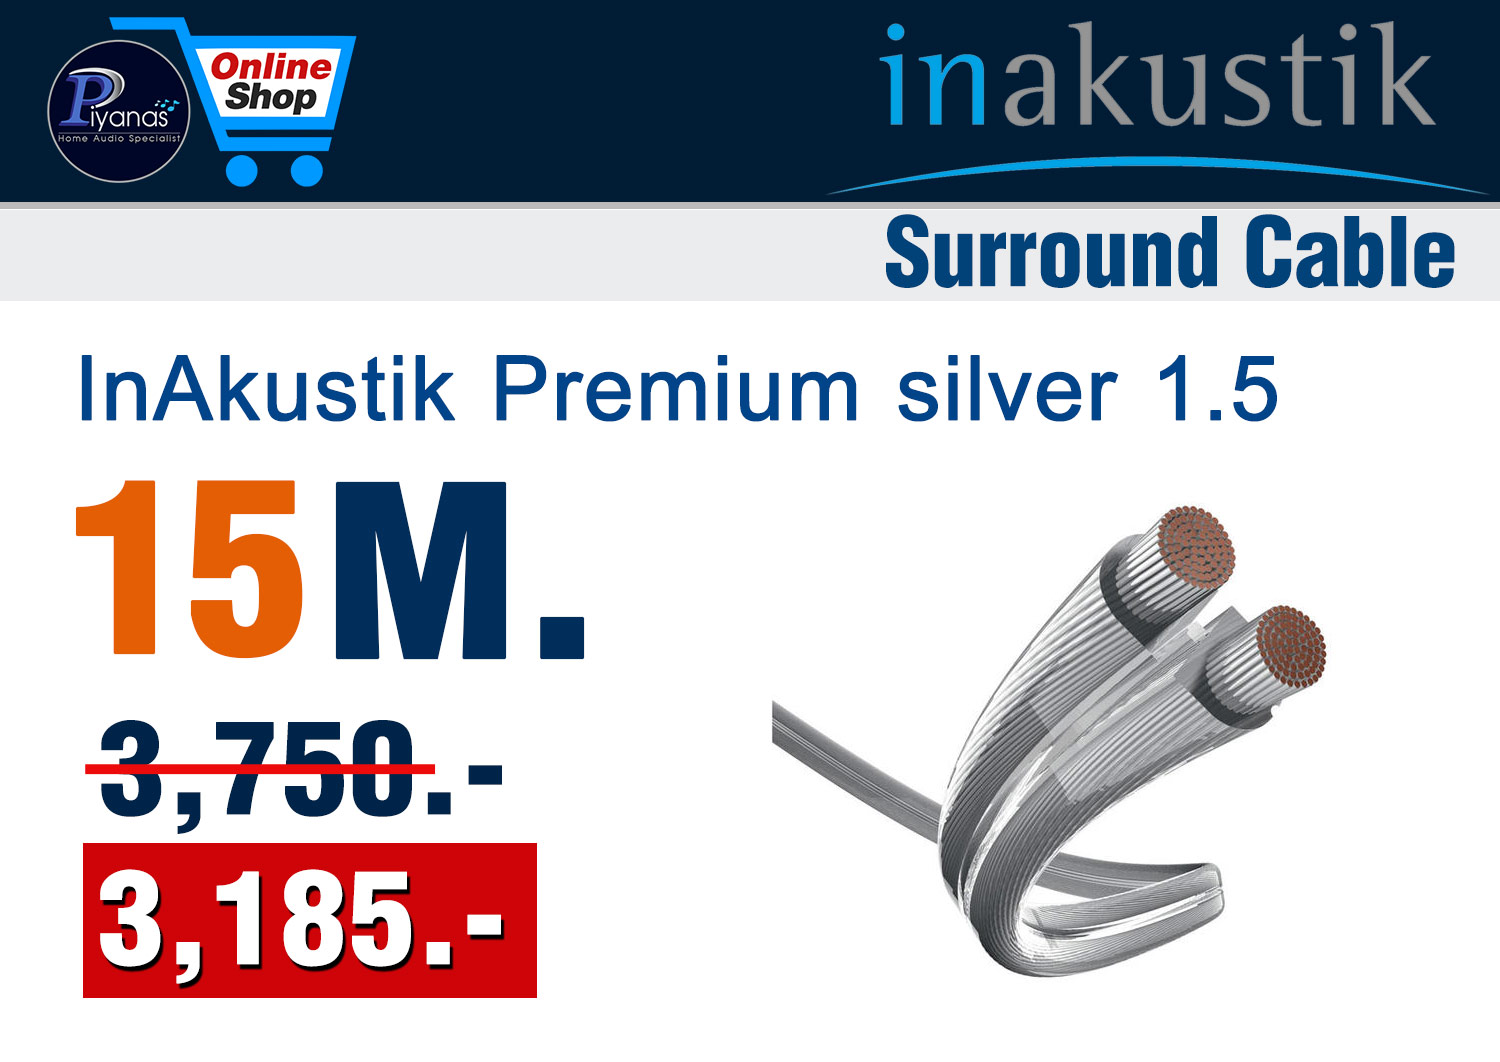 Monitor Premium silver 1.5 (15M.)